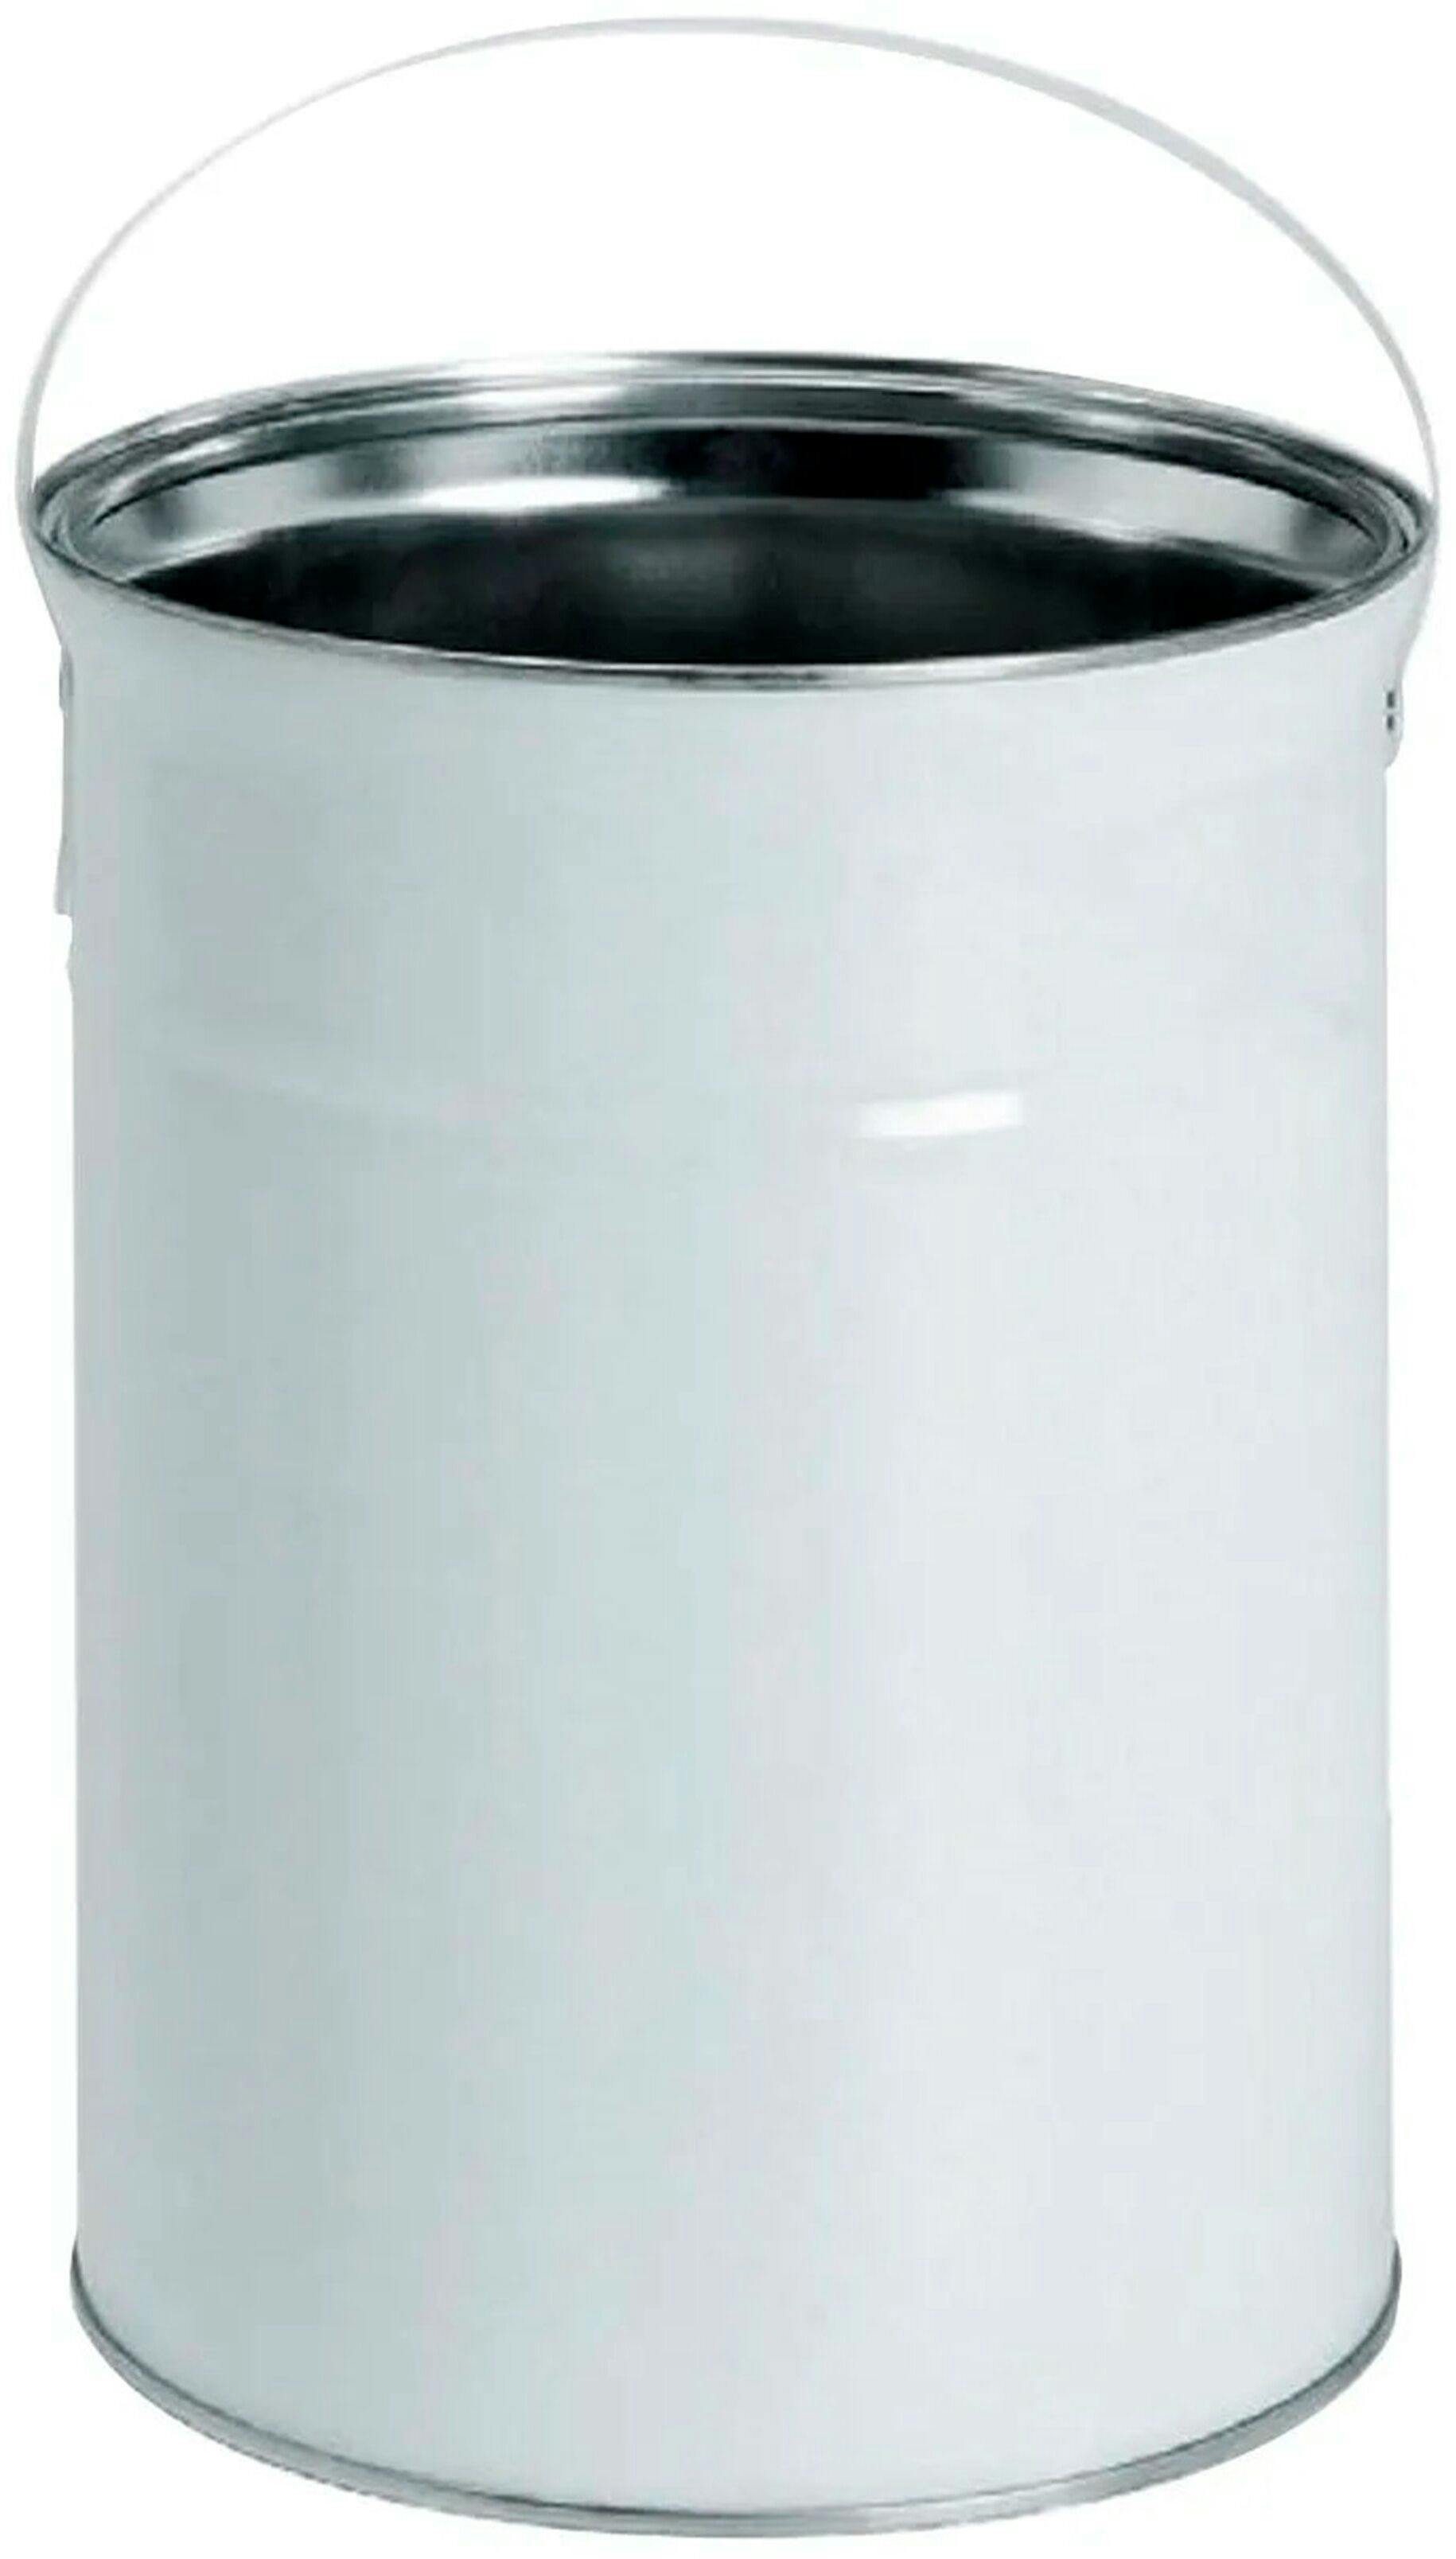 Metalleimer 6,2 Liter weiß D196.5